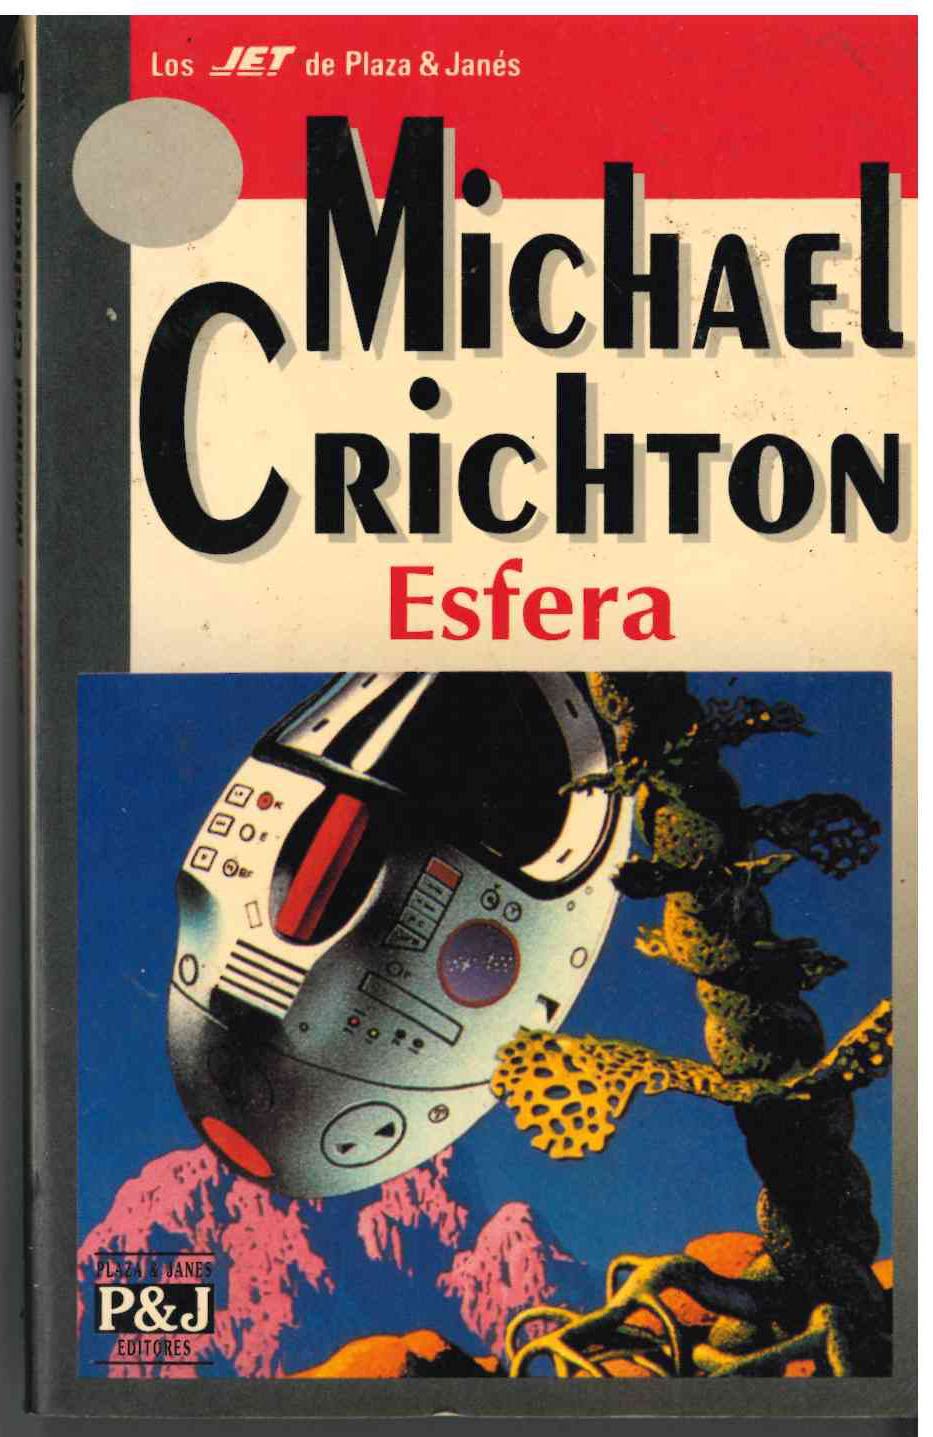 Michael Crichton. Esfera. Plaza & Janes. 1993. Colección Jet nº 202